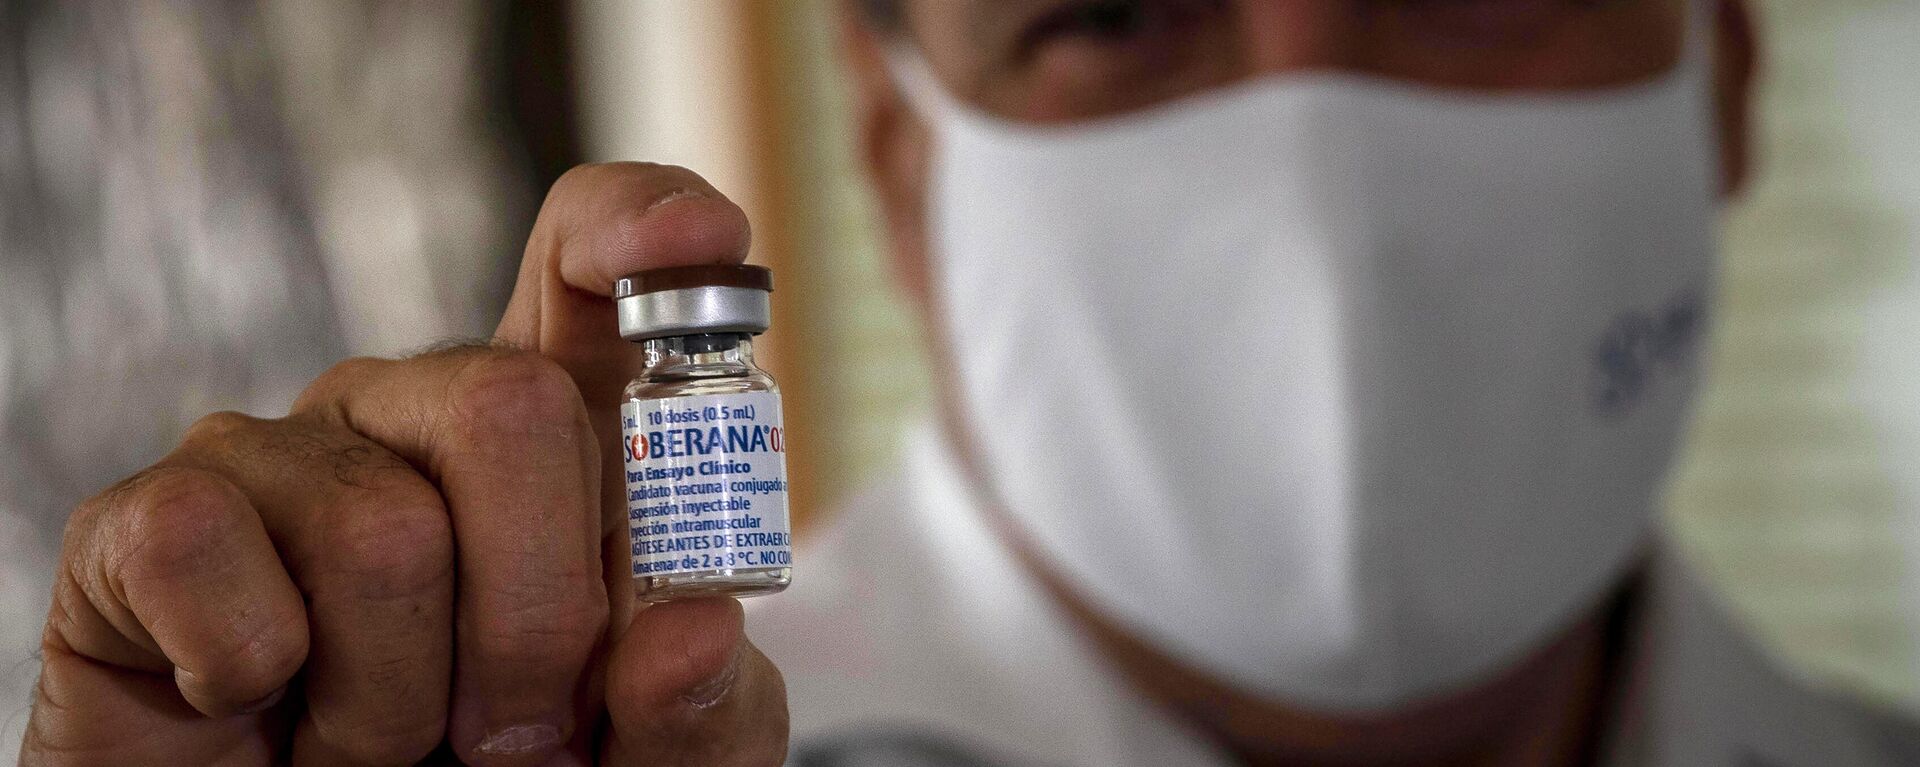 Un médico sostiene la vacuna cubana Soberana 02 contra COVID-19 - Sputnik Mundo, 1920, 20.11.2021